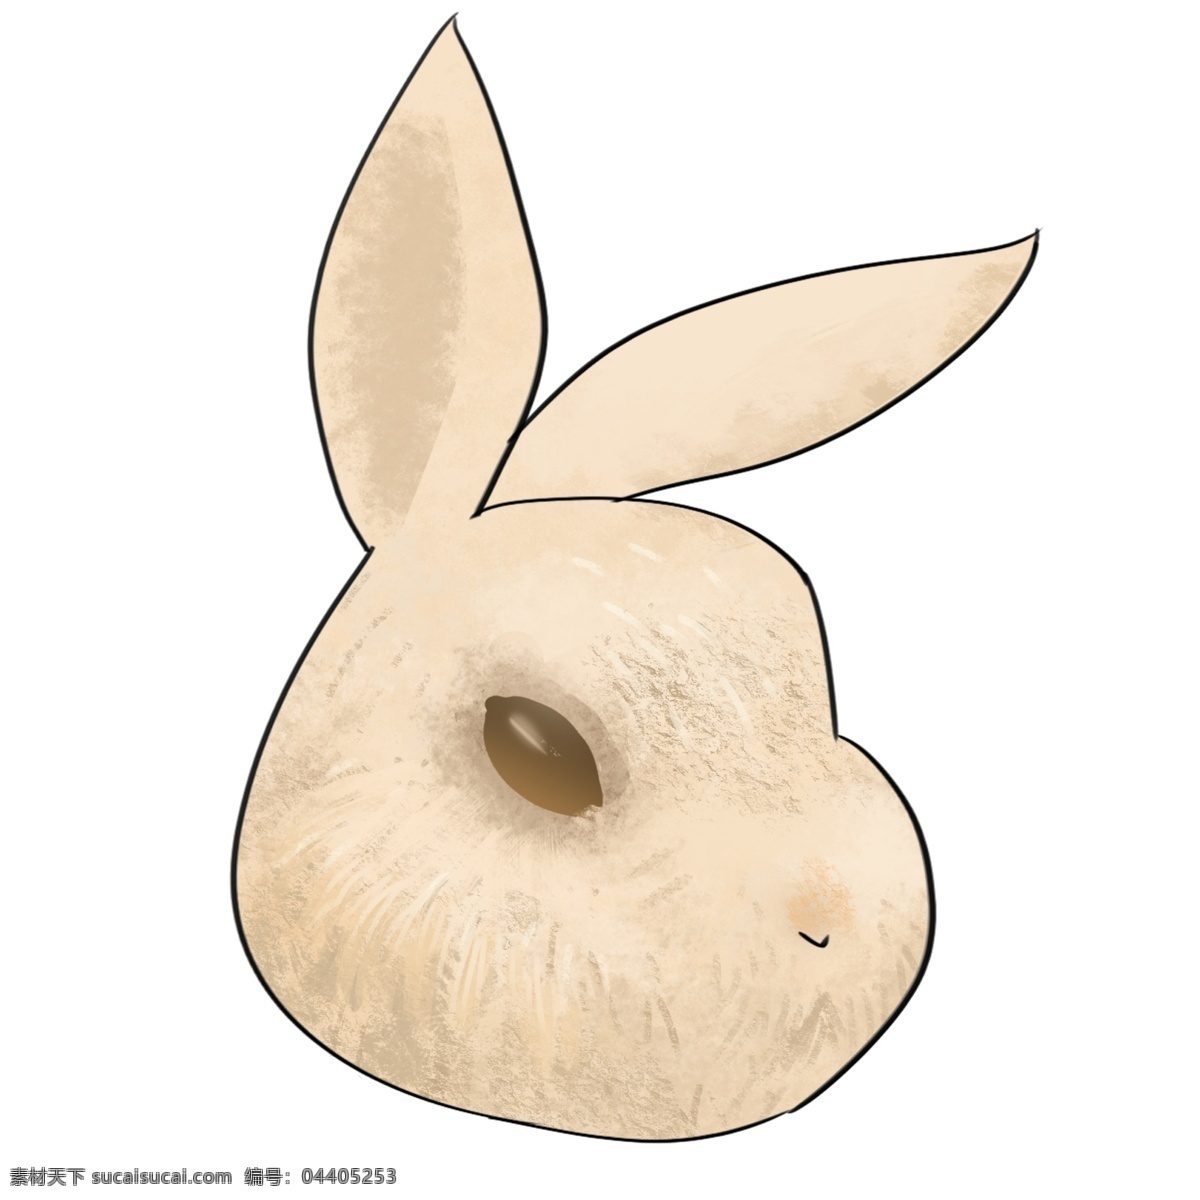 弯曲 耳朵 复活节 兔子 弯曲的耳朵 卡通 创意兔子 乖巧的兔子 调皮的兔子 可爱的兔子 装饰兔子